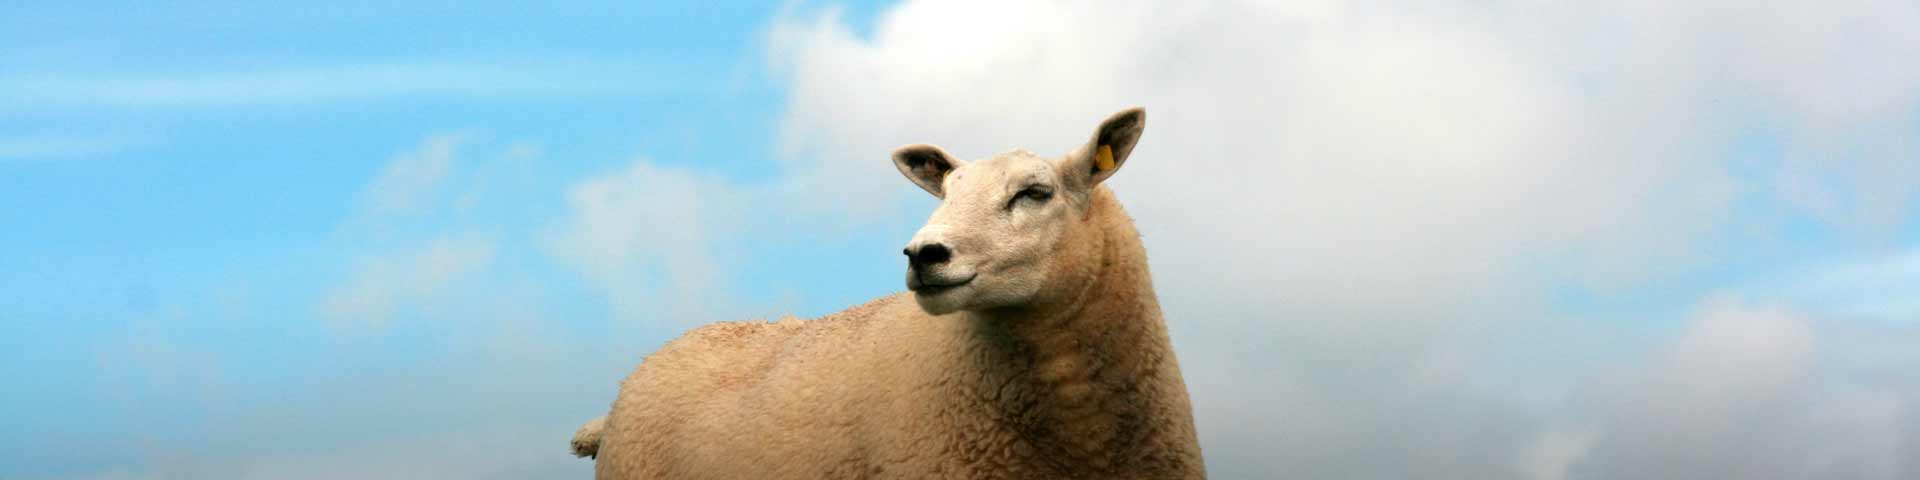 schapendekseizoen-1920x480